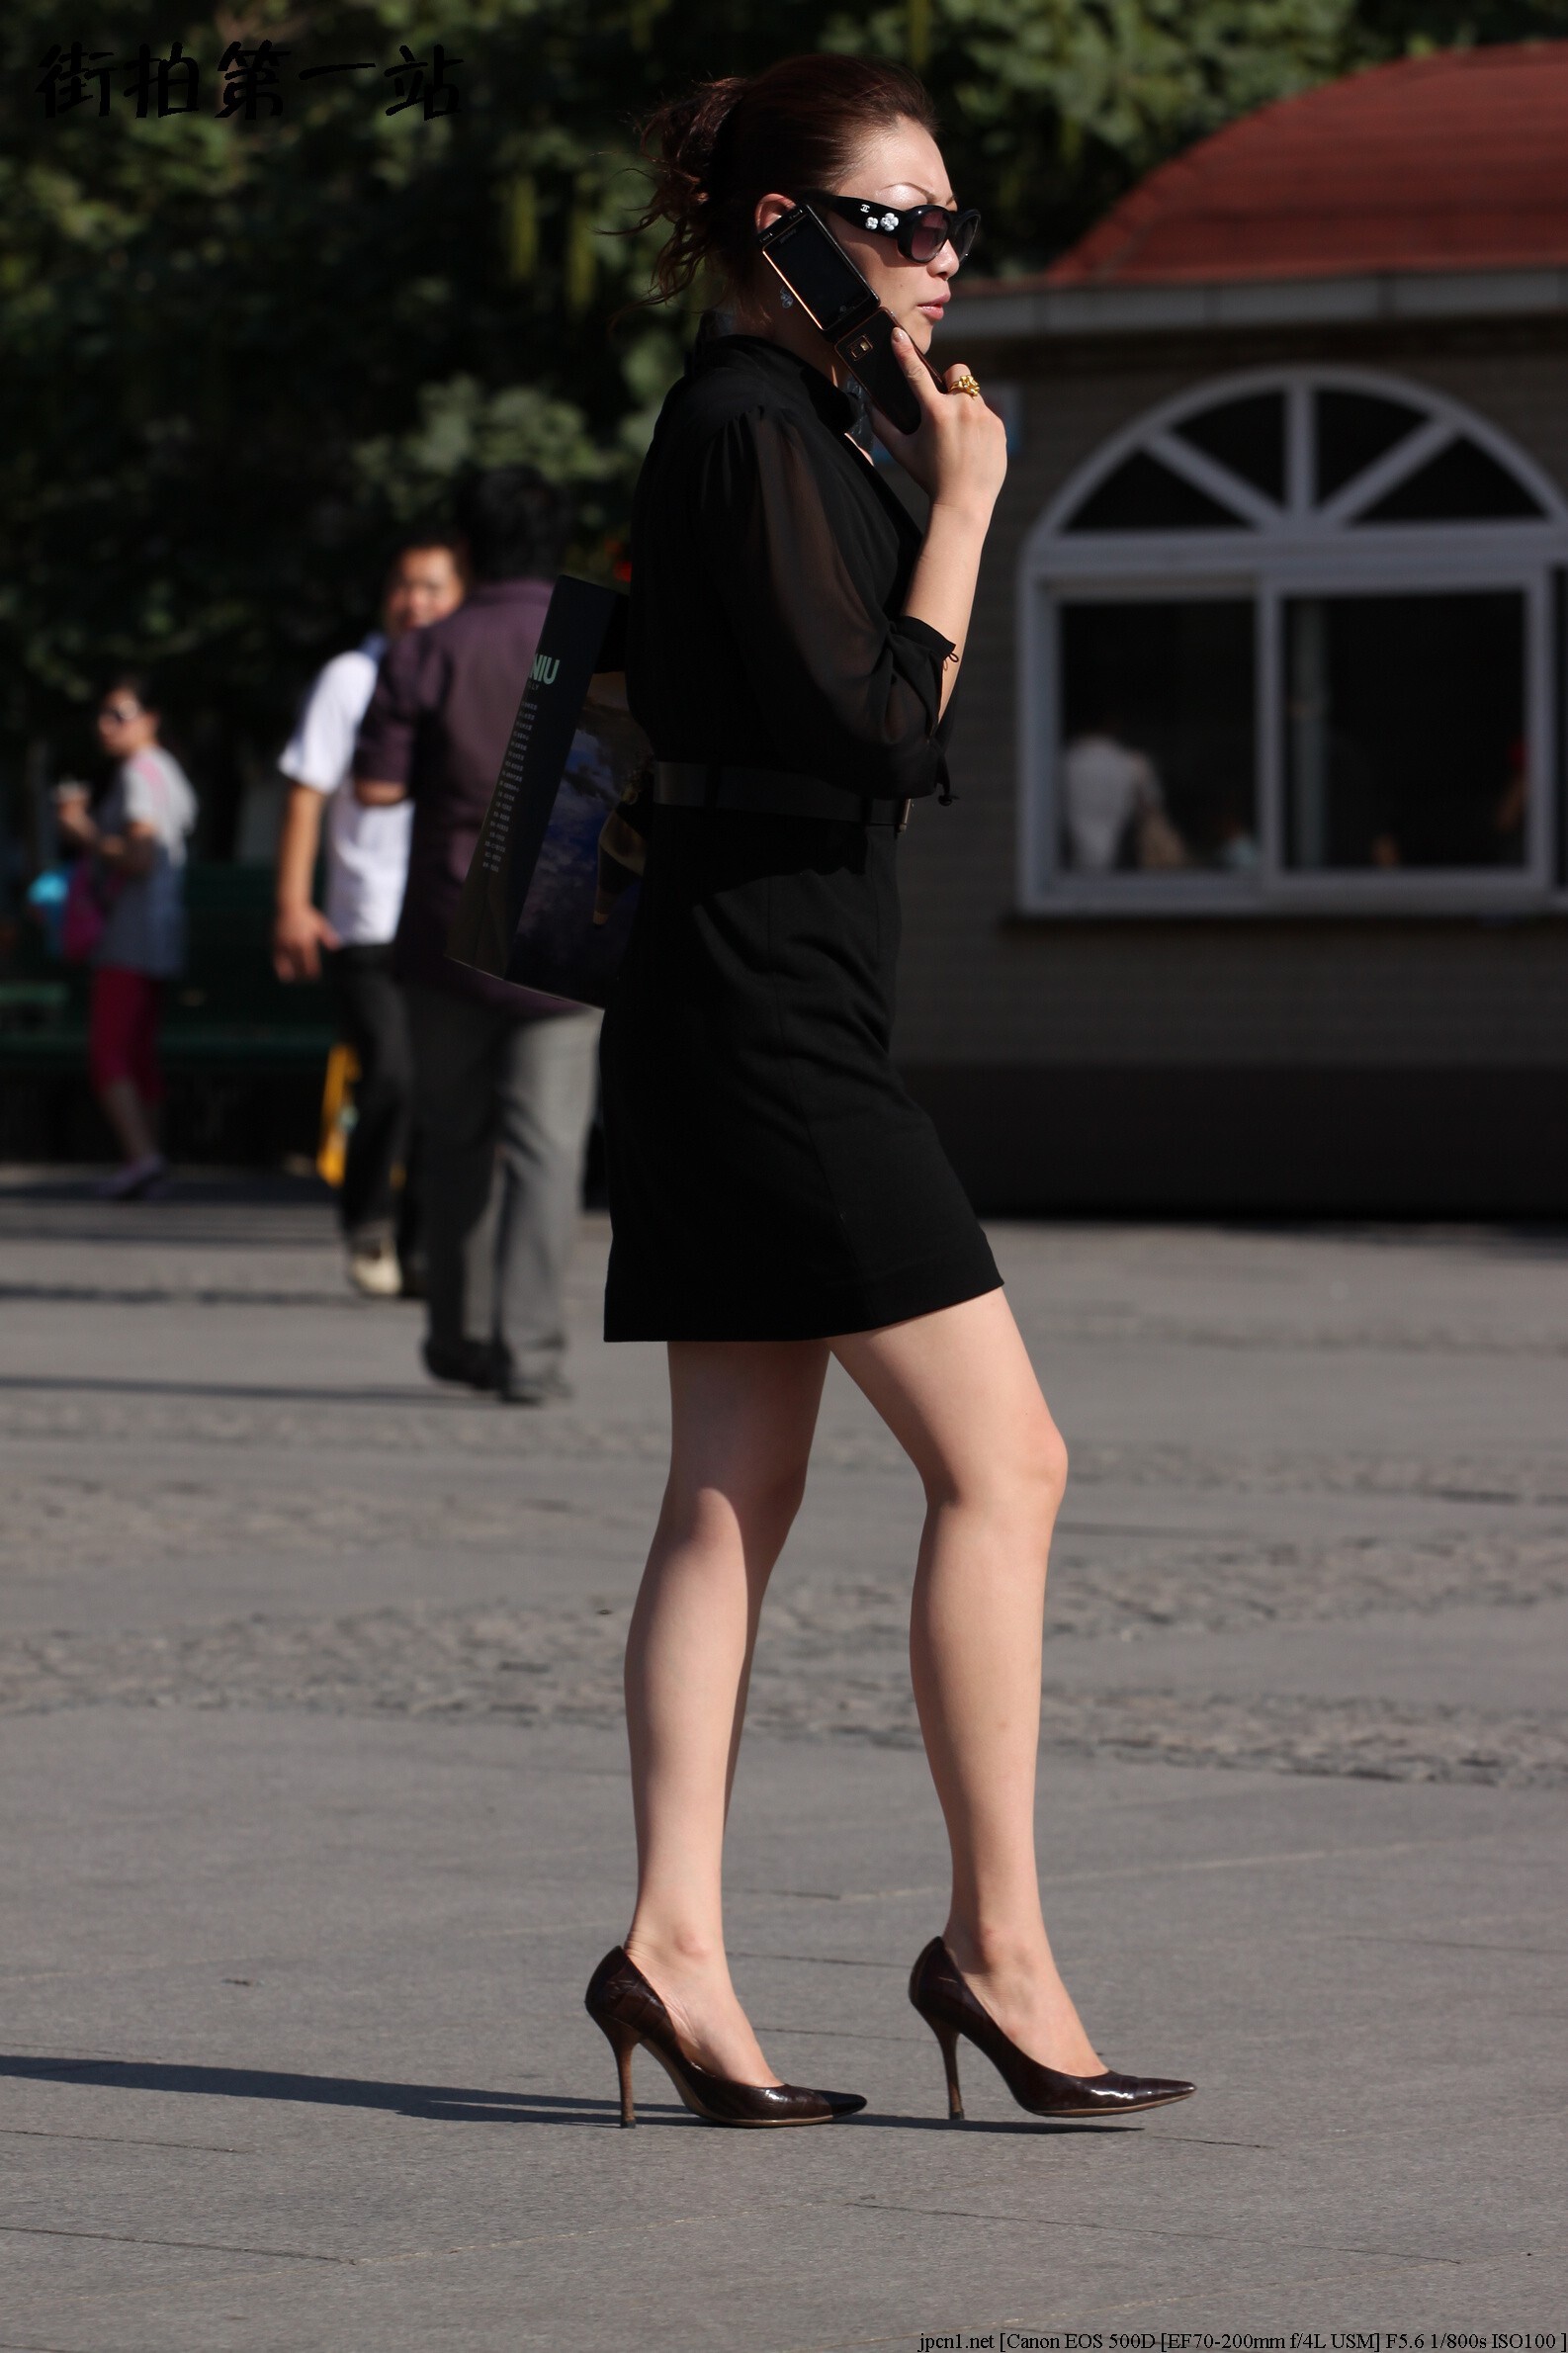 [户外街拍] 2013.11.03 黑色包臀短裙少妇雪白的大腿